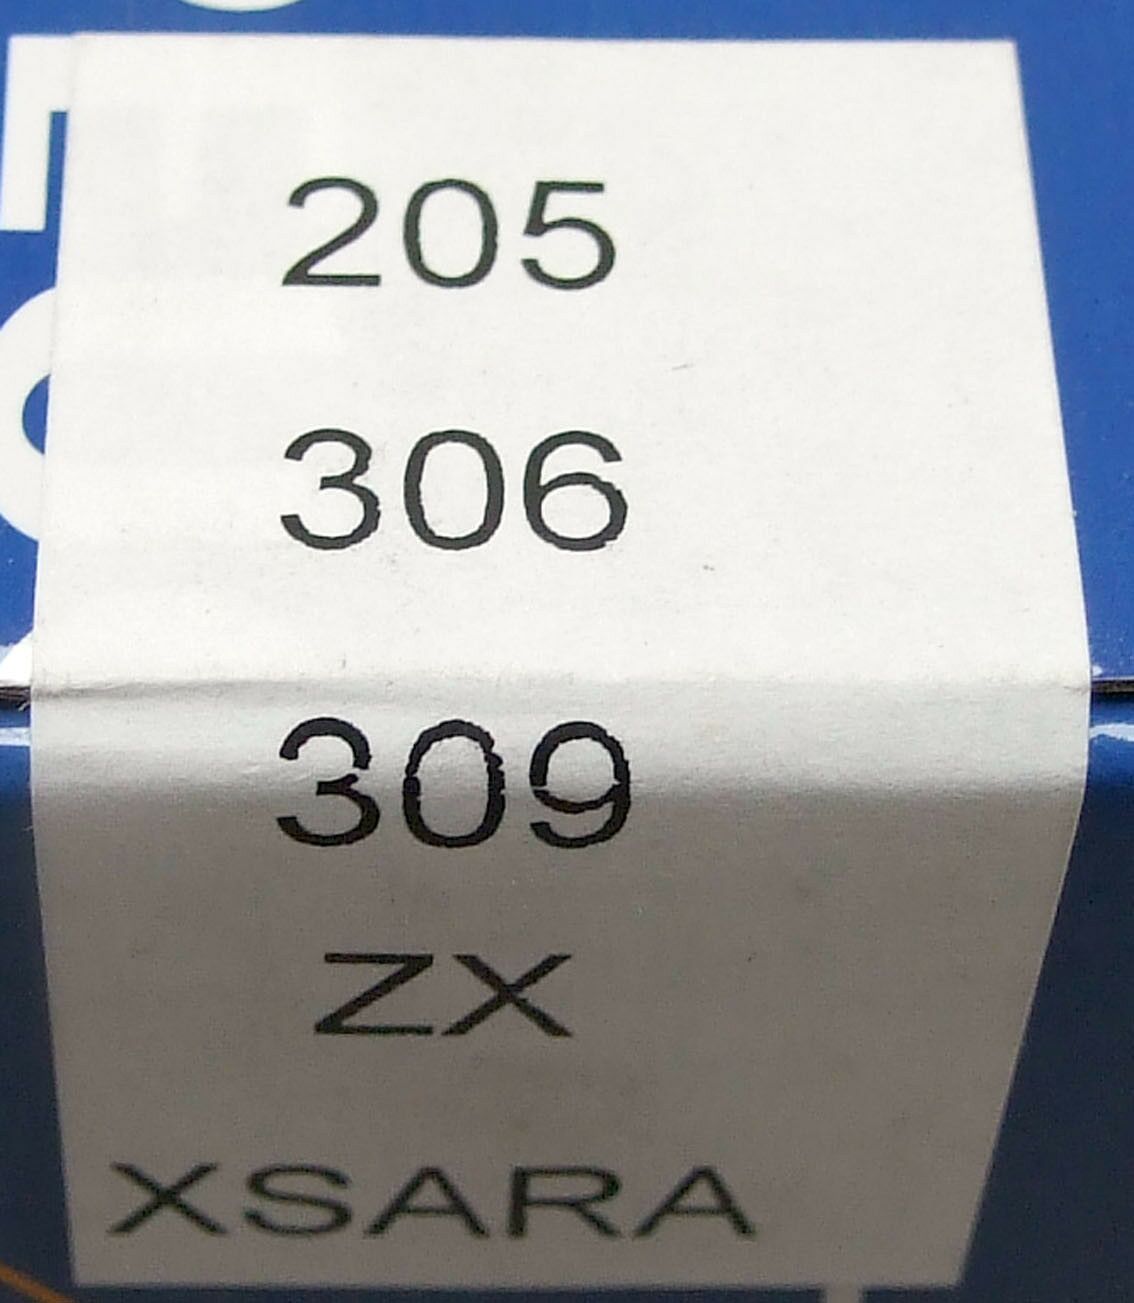 Tuljak l/d - xsa,zx,p205,306,309